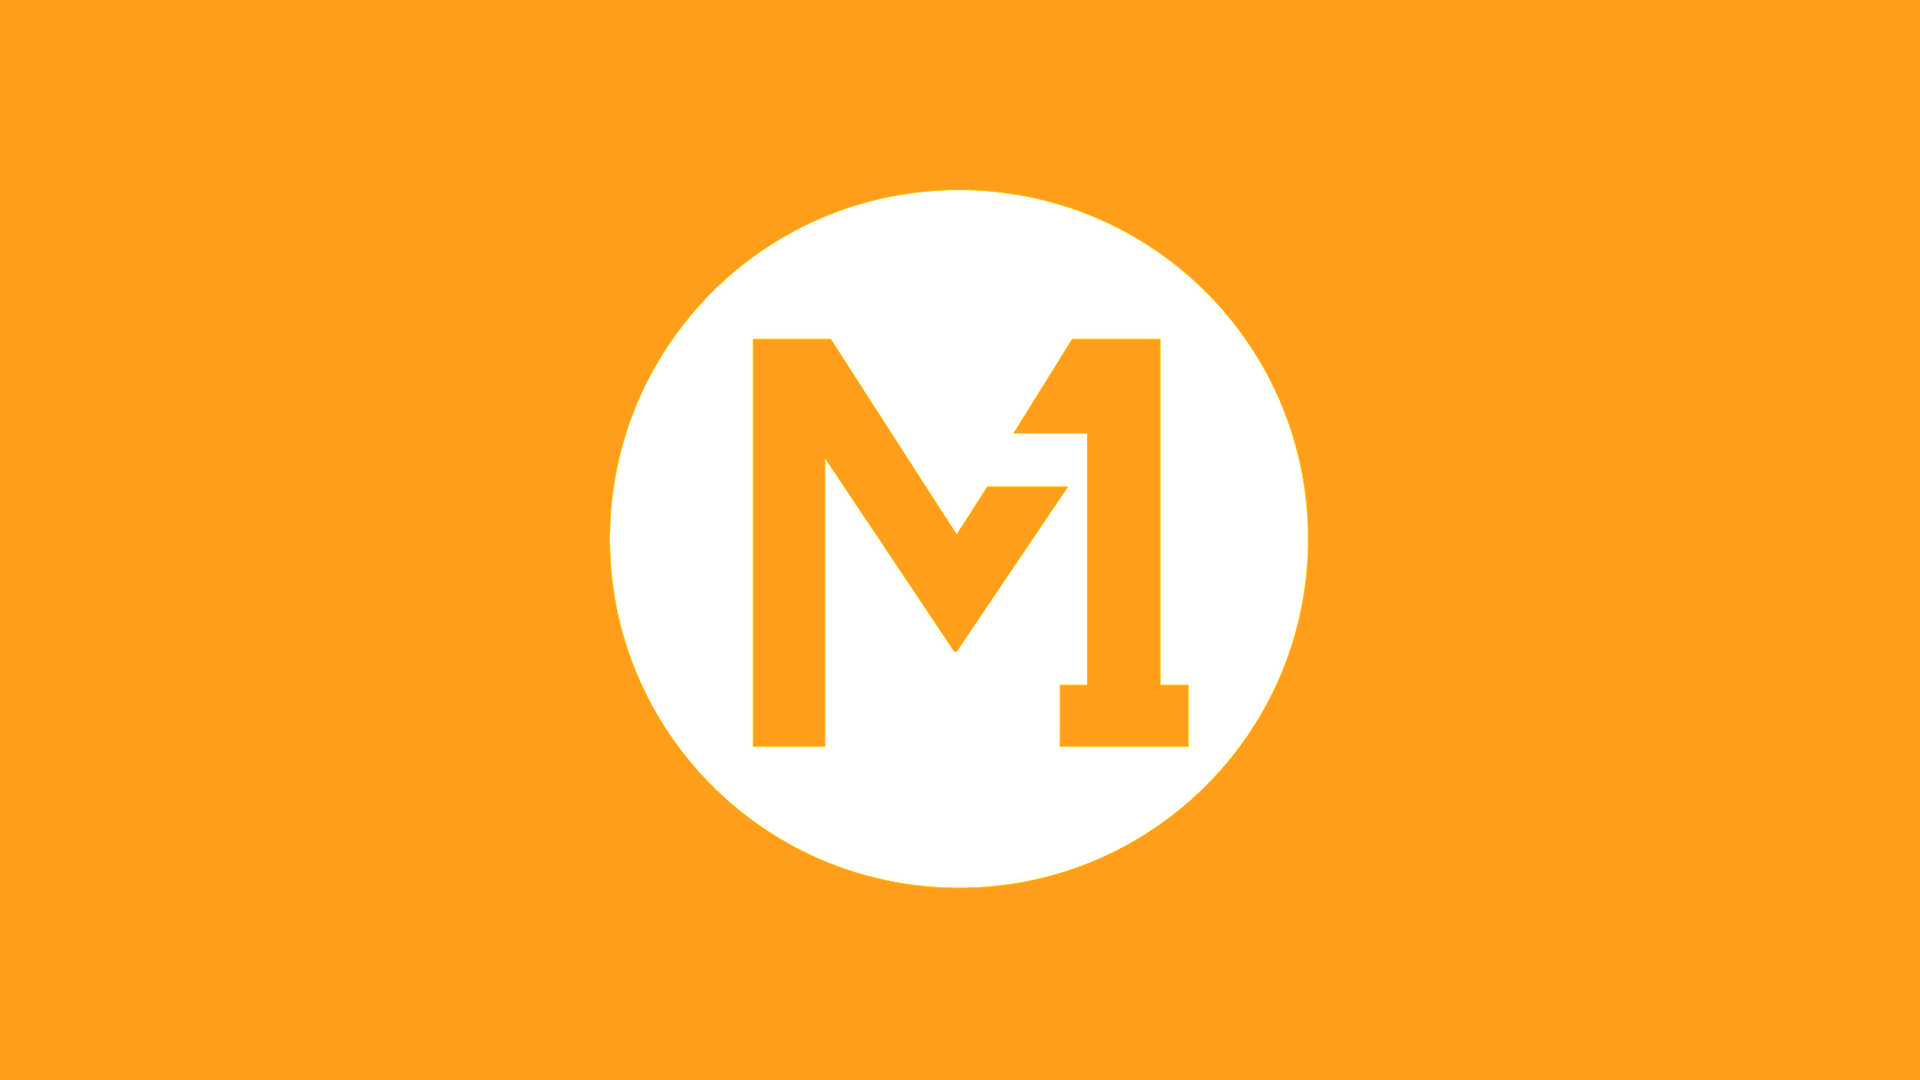 新加坡电信公司 m1 更换新logo